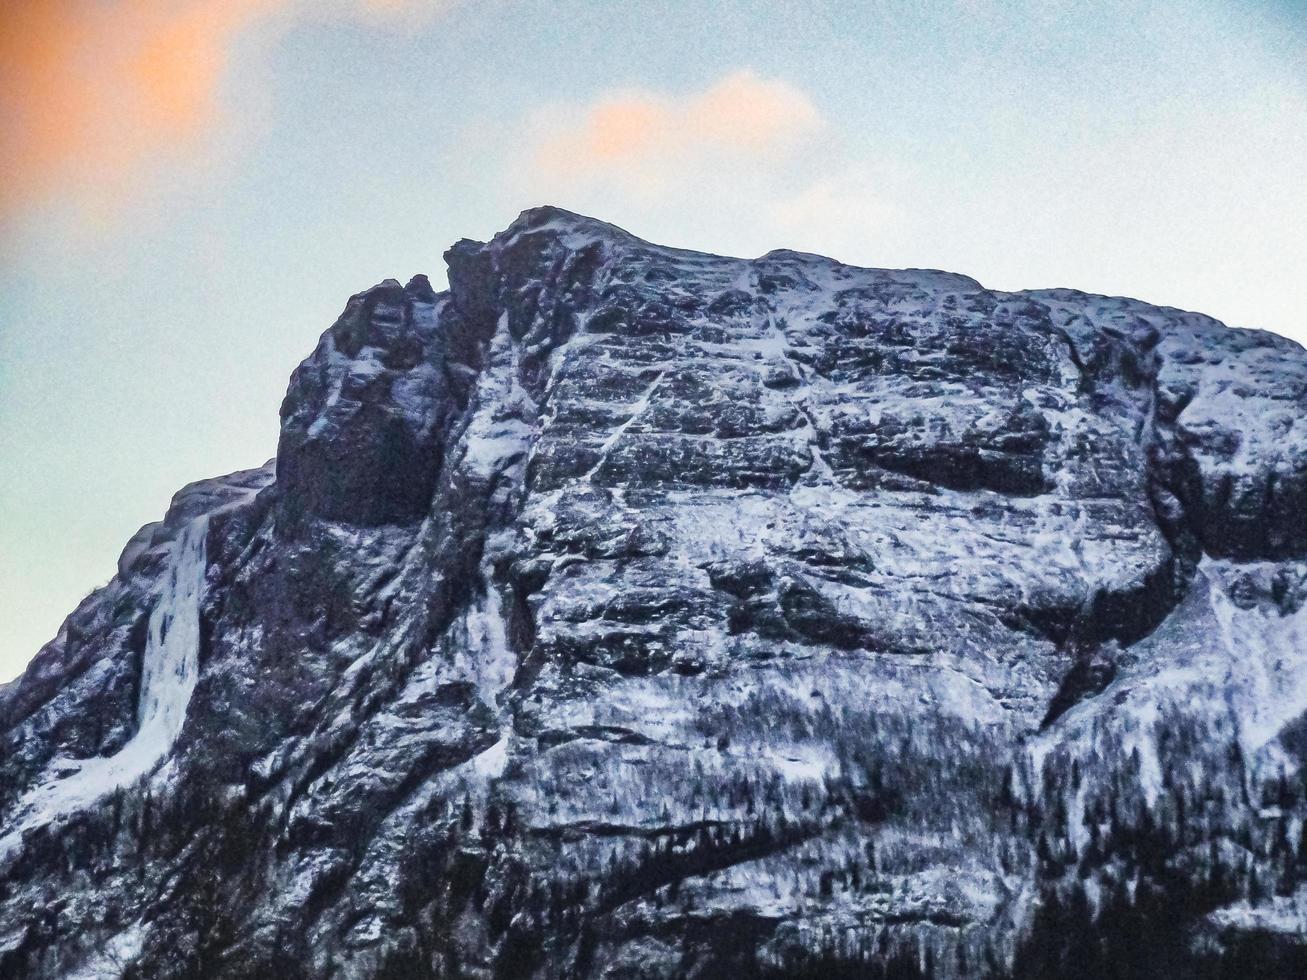 gefrorener wasserfall hydnefossen veslehodn berg in hemsedal, norwegen. foto